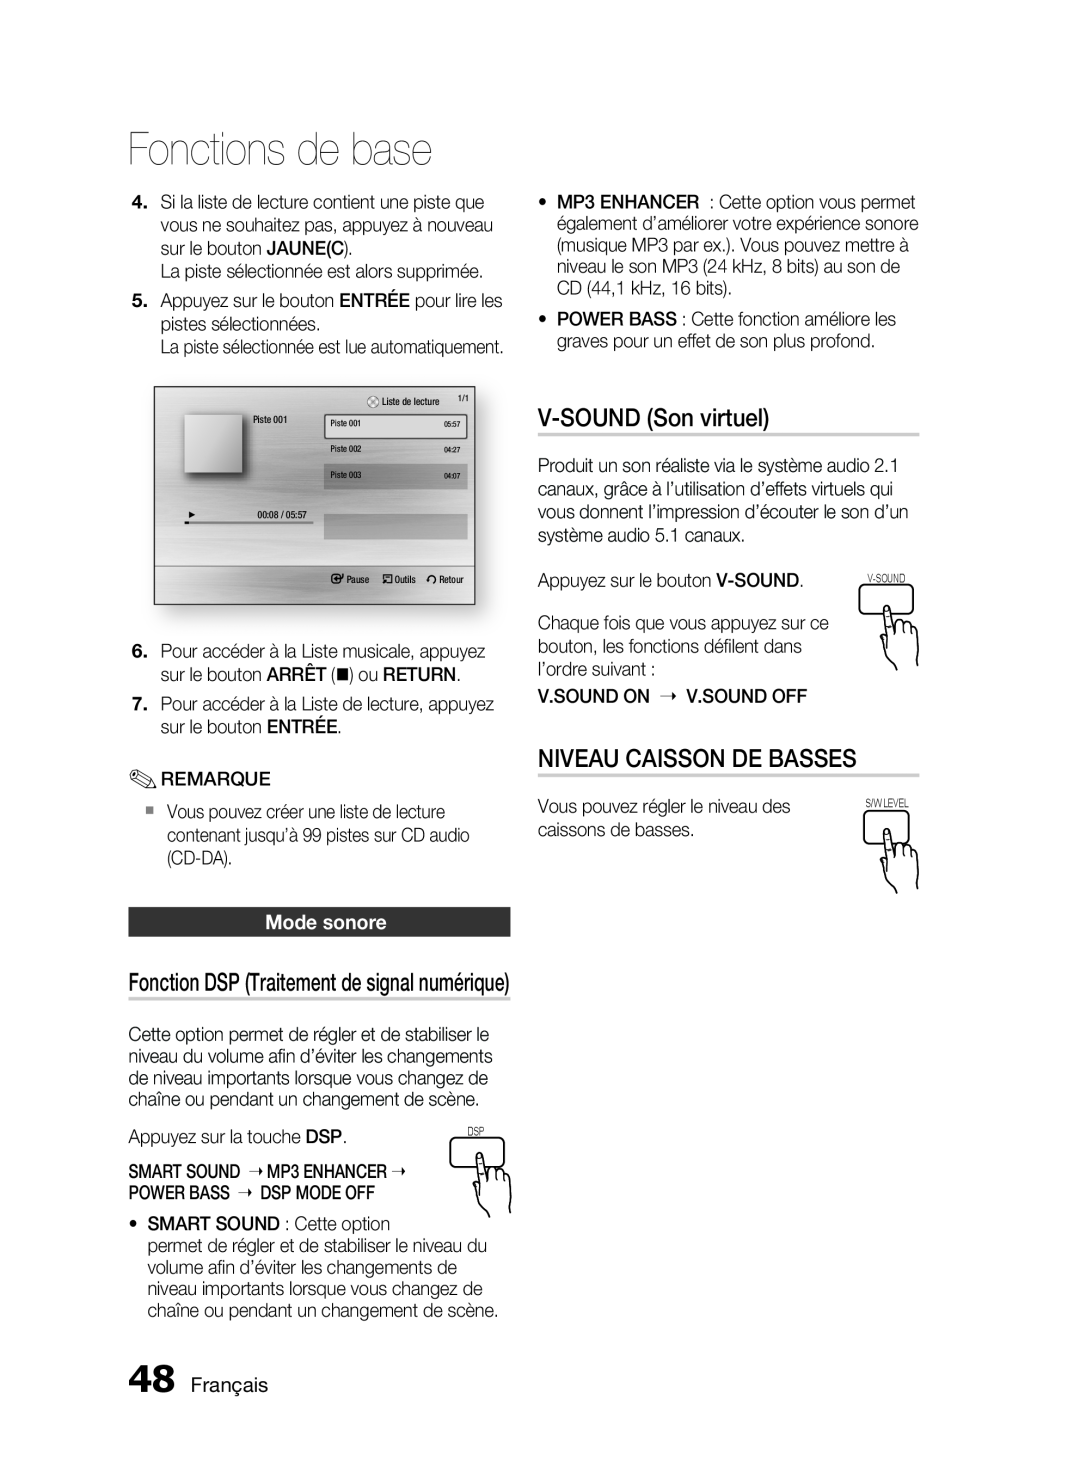 Samsung HT-C6200/XEF manual V-SOUND Son virtuel, Niveau Caisson De Basses, Mode sonore, Français, Fonctions de base 